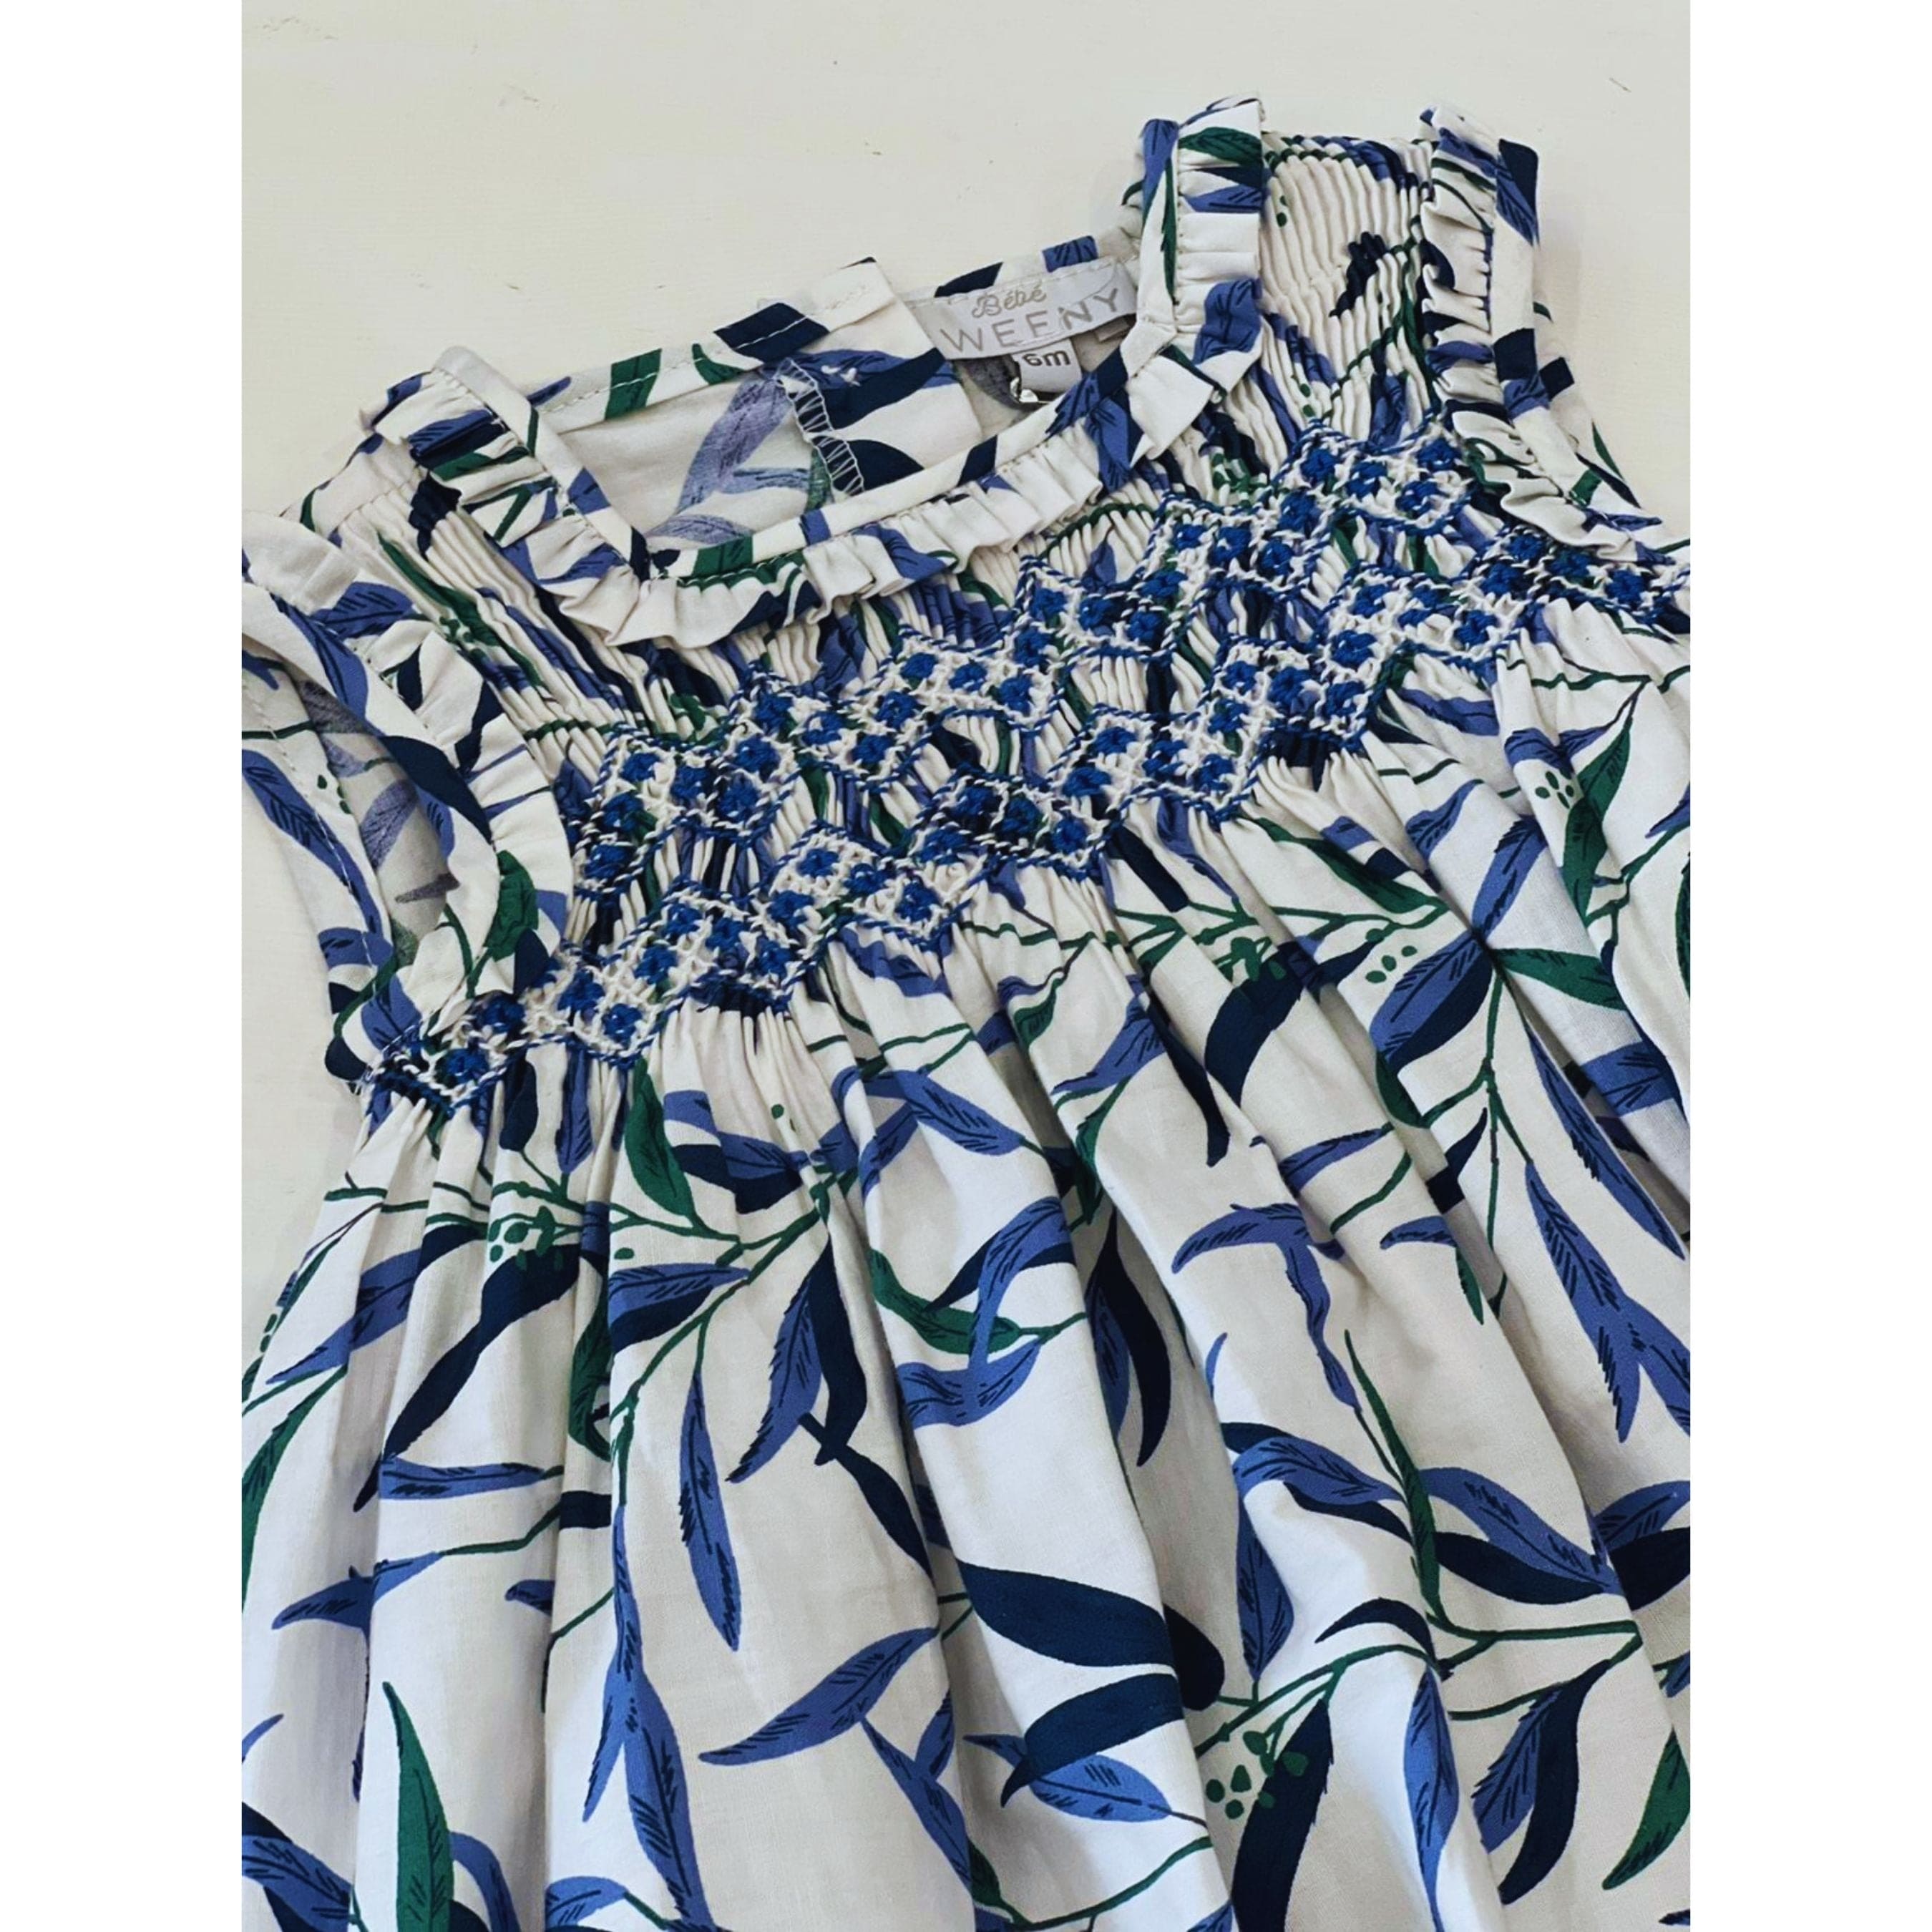 Livy | Gils Blue & Green Floral Smocked Dress